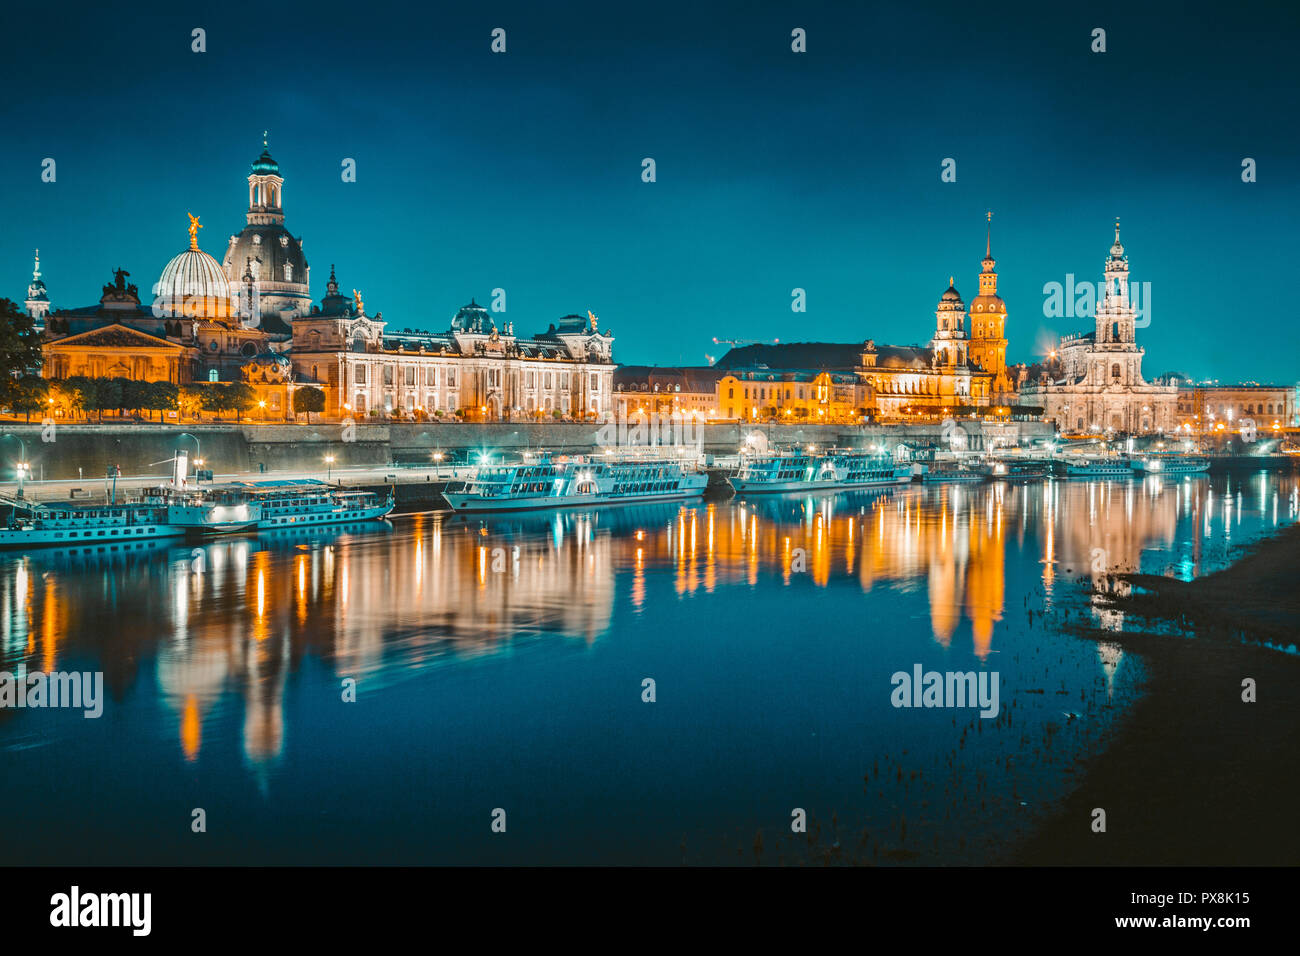 Klassische Dämmerung Blick auf die historische Stadt Dresden in der wunderschönen Elbe während der Blauen Stunde in der Dämmerung, Sachsen, Deutschland widerspiegelt. Stockfoto